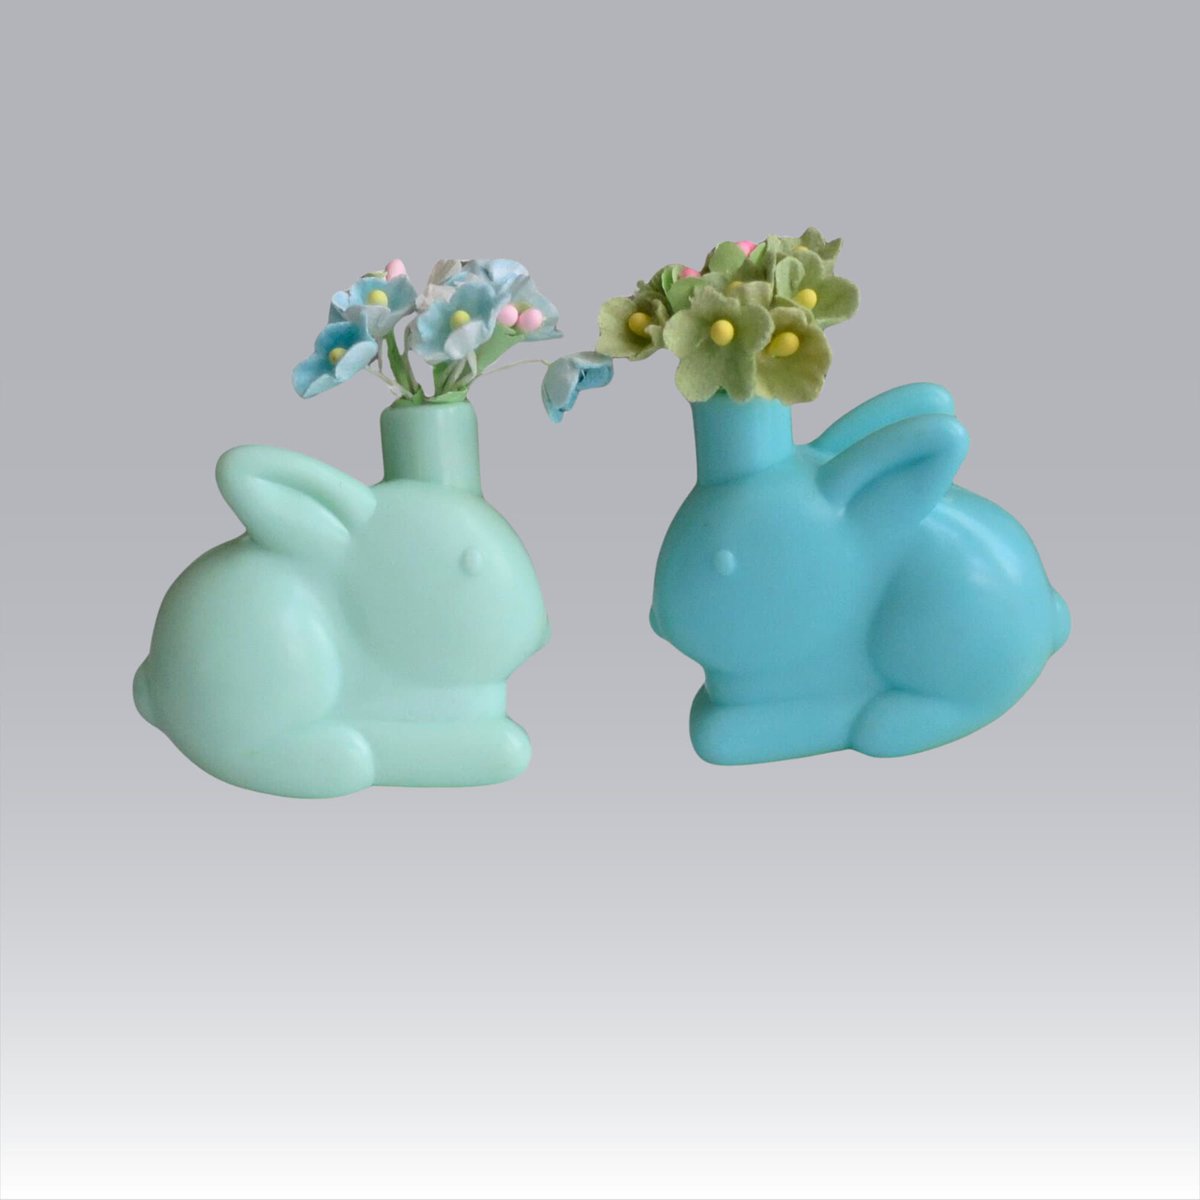 Retro Spring Bunny Vase for Gifting or Display,  Upcycled Kitsch Mini Rabbits tuppu.net/c6e03ed0 #MomDay2024 #EtsyteamUnity #SMILEtt23 #Vintage4Sale